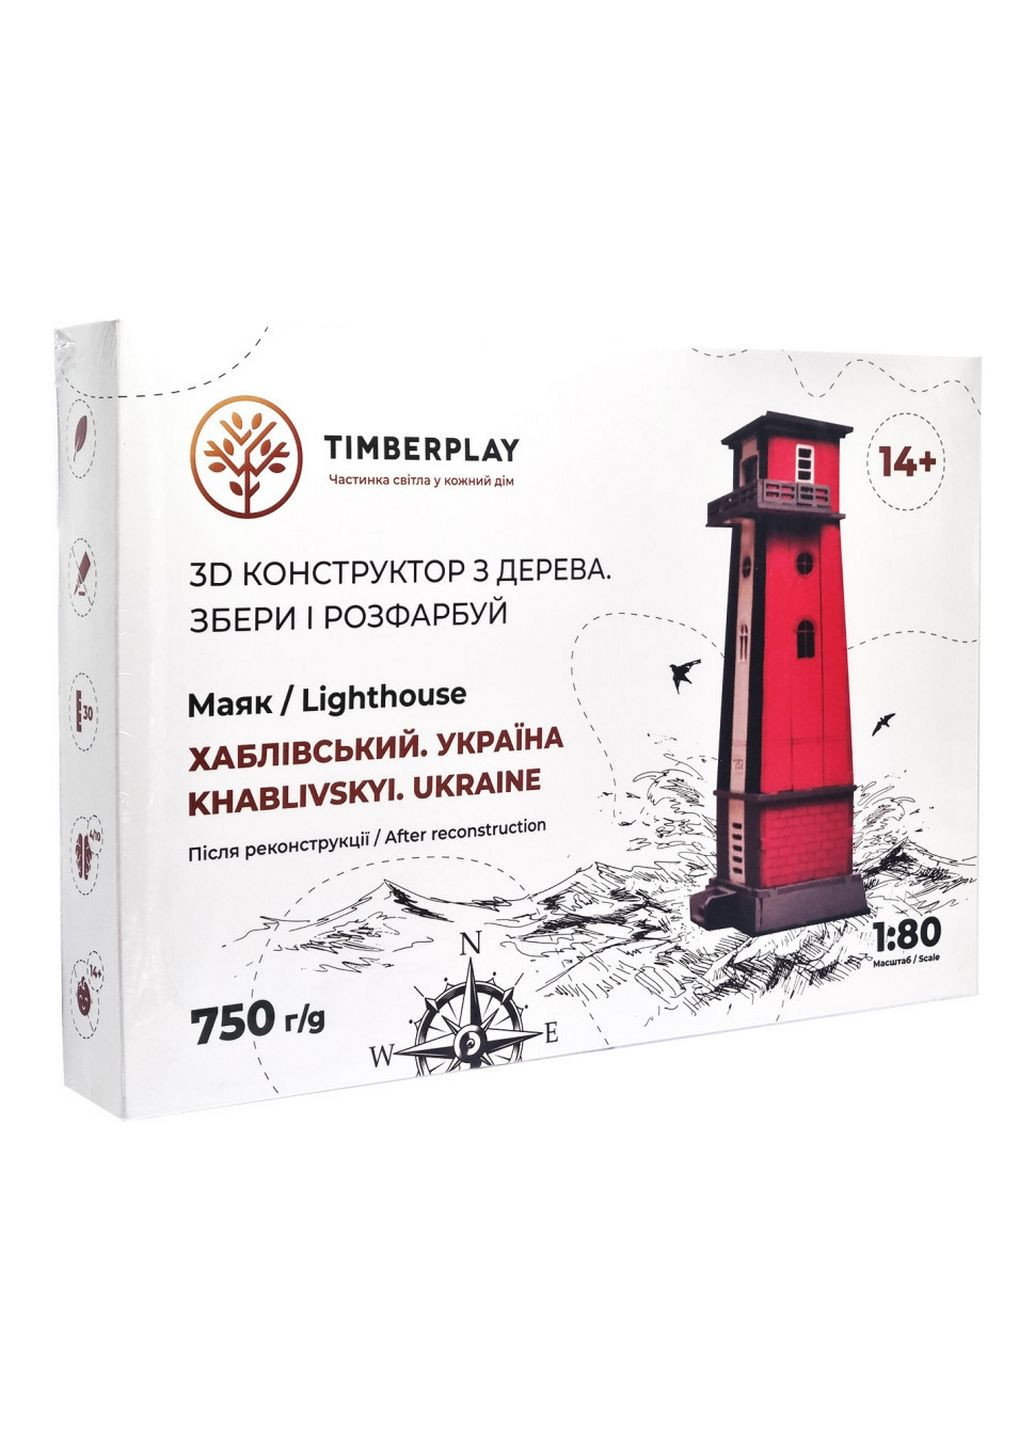 Конструктор деревянный 3D маяк Хабловский после реконструкции (Украина, Херсонская область), 54 детали Timberplay (288137855)